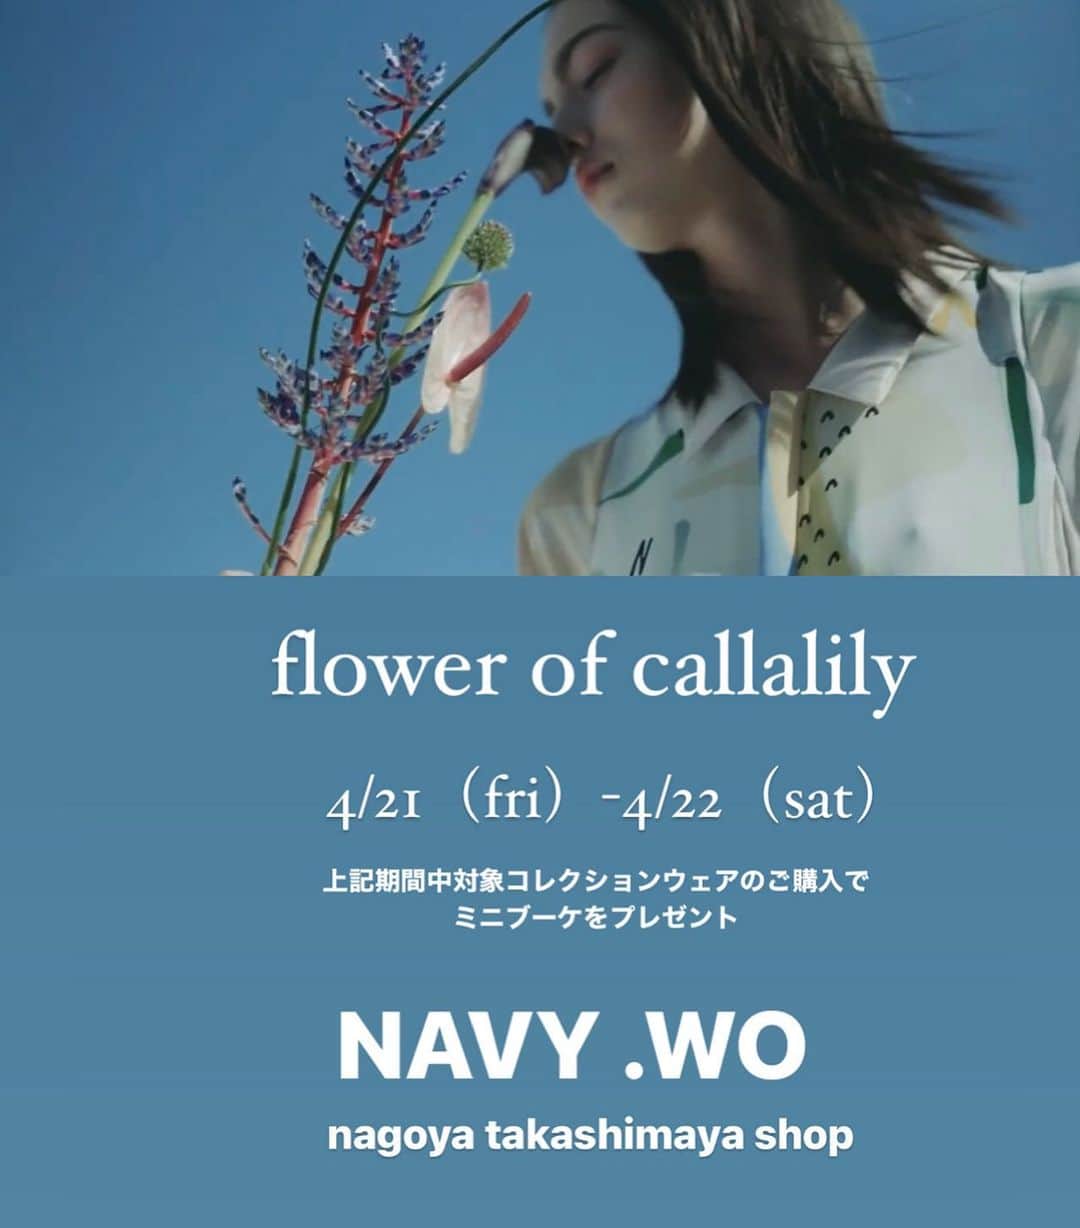 ネイビー ウォのインスタグラム：「〈flower of callalily〉  4/21（fri）-22（sat）の2日間  NAVY.WO 名古屋高島屋店でYoutube掲載の対象商品のご購入で、オリジナルミニブーケをプレゼント！  ブーケは初日に東京にあるフラワーショップから名古屋まで新しい生花をハンドデリバリー致します。  ショップには2023春夏コレクションの flowerシリーズのフルラインナップをはじめ、新作ウェアが入荷。  NAVY.WOにしかない素敵なデザインウェア&フラワーを楽しみにぜひ店頭チェックしにきてくださいね。  /////////////////////////////////////////////////////  date:4/21（fri）-22（sat） 21日:12:00-20:00 22日:10:00-20:00  place:NAVY.WO 名古屋高島屋店　  detail:2万円以上のお買い上げの方を対象にオリジナルブーケをプレゼント。 ※ブーケは数に限りがあるのでお早めのご来店をお待ちしています。 ※対象商品はYouTubeで  NAVY.WO  またはプロフィールURLリンク内よりご覧いただけます。 https://youtube.com/@navywo-2007 ※画像のフラワーはイメージです。  #navywo #youtube  #present #flowers  #nagoya #takashimaya #takashimayastyle #名古屋髙島屋 #shinjuku #takashimayastyleandedit #新宿髙島屋 #jiyugaoka #kokura #小倉井筒屋 #navywoofficial #callalily @navy.wo_snap_by.staff  @navywo_nagoya」